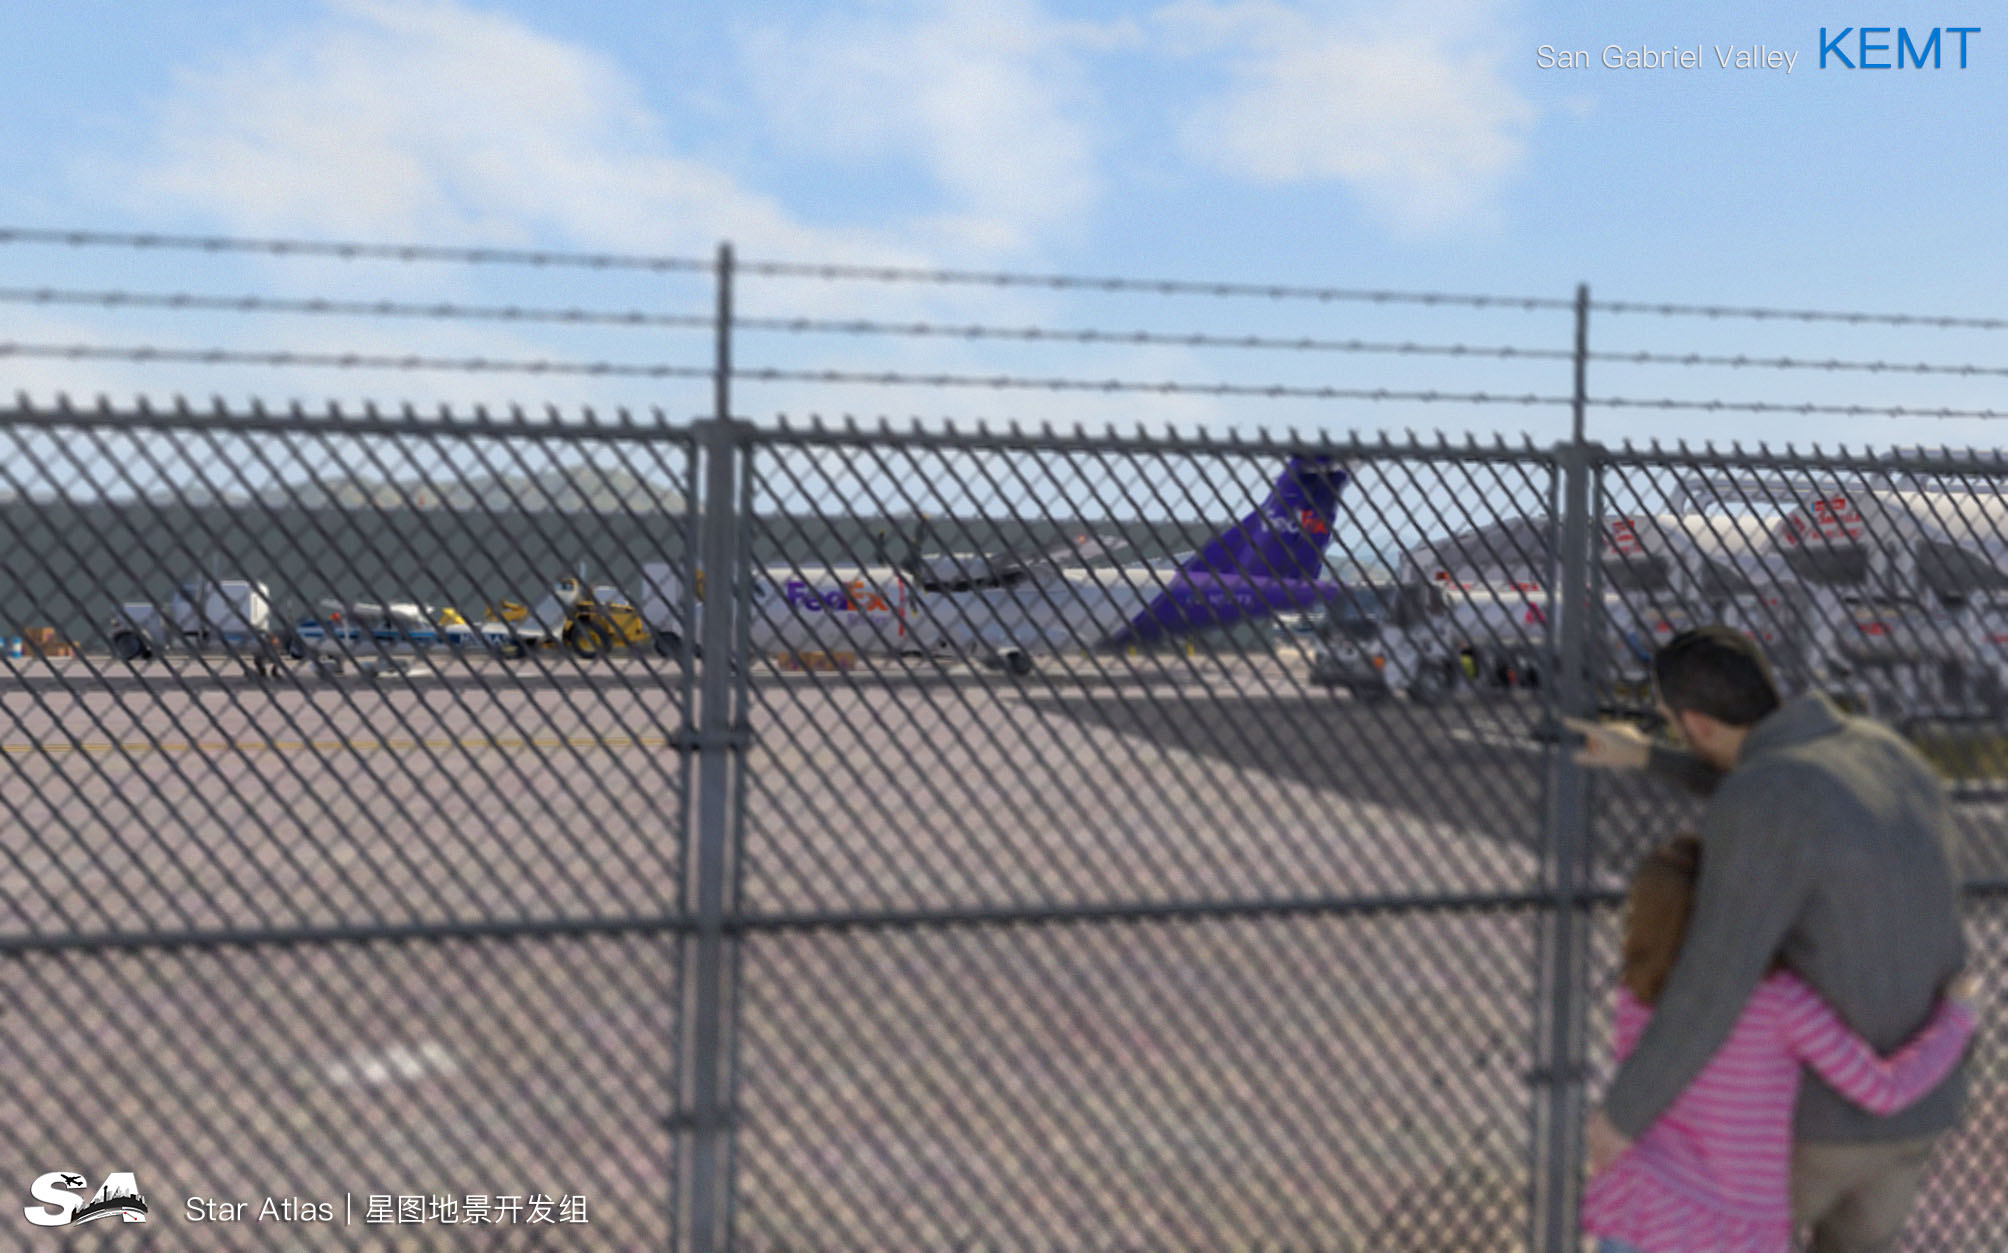 【X-Plane】KEMT-圣盖博谷机场 HD 1.0-5499 